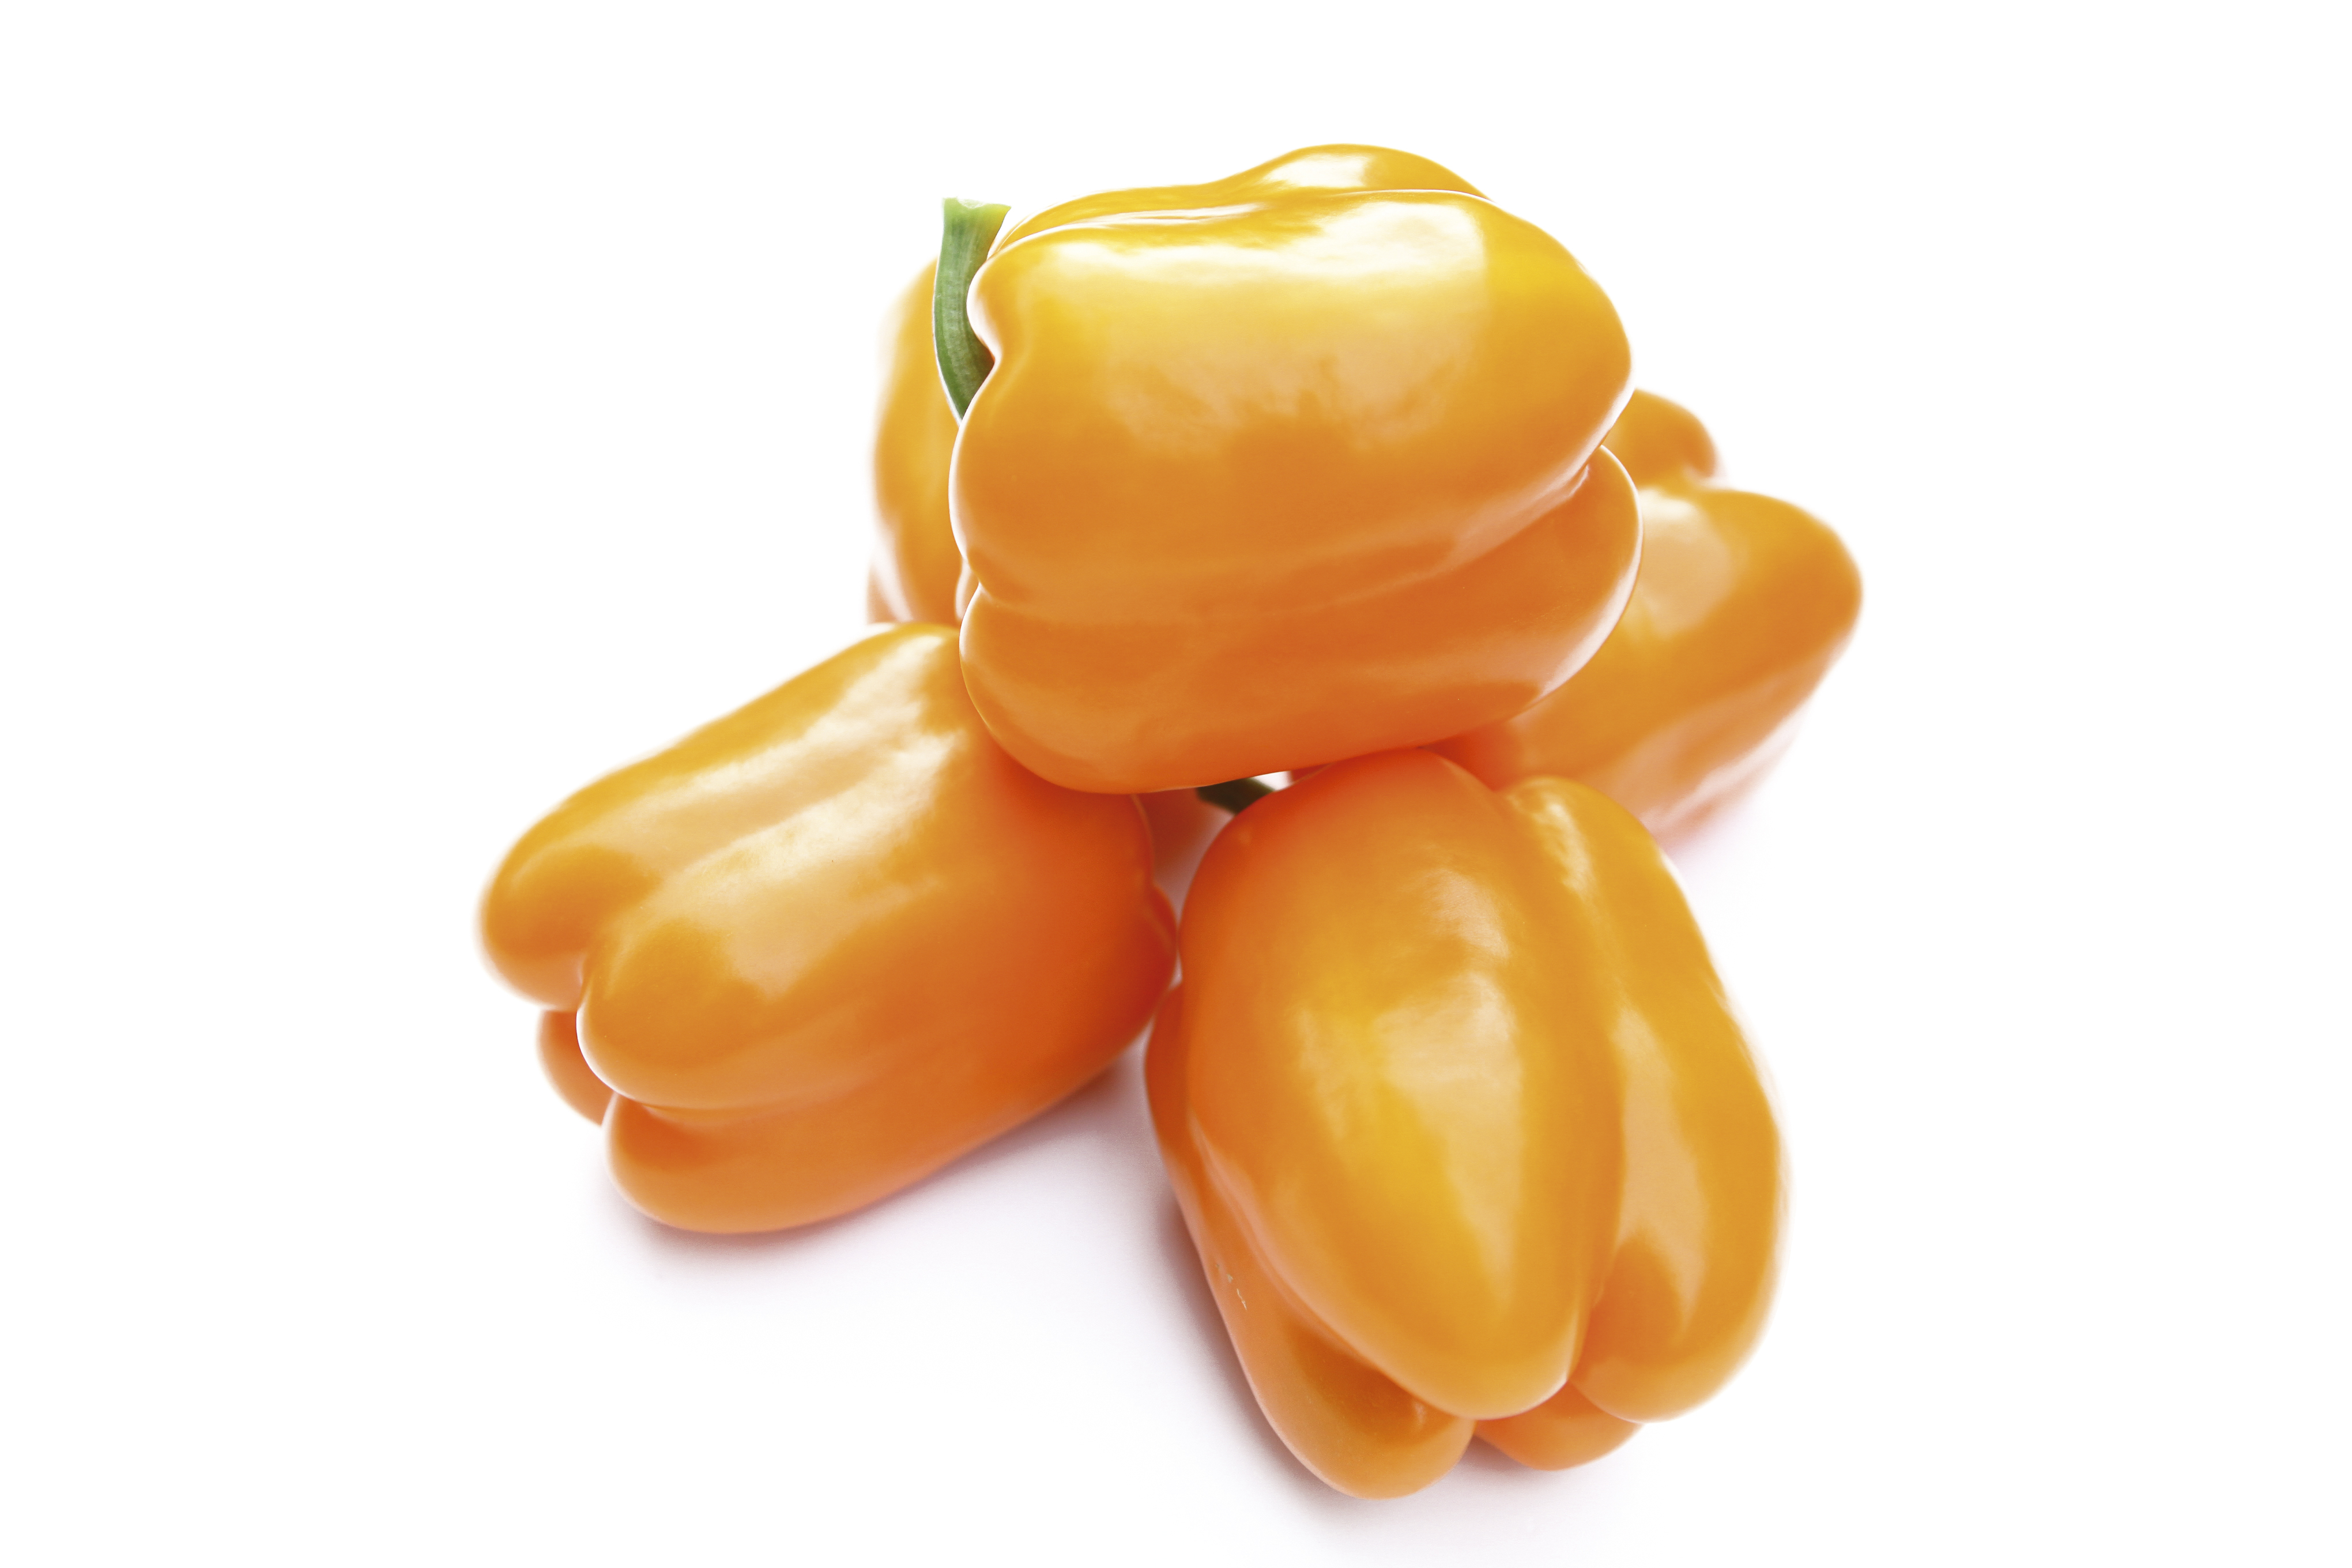 Amber blocky Orange to Yellow pepper